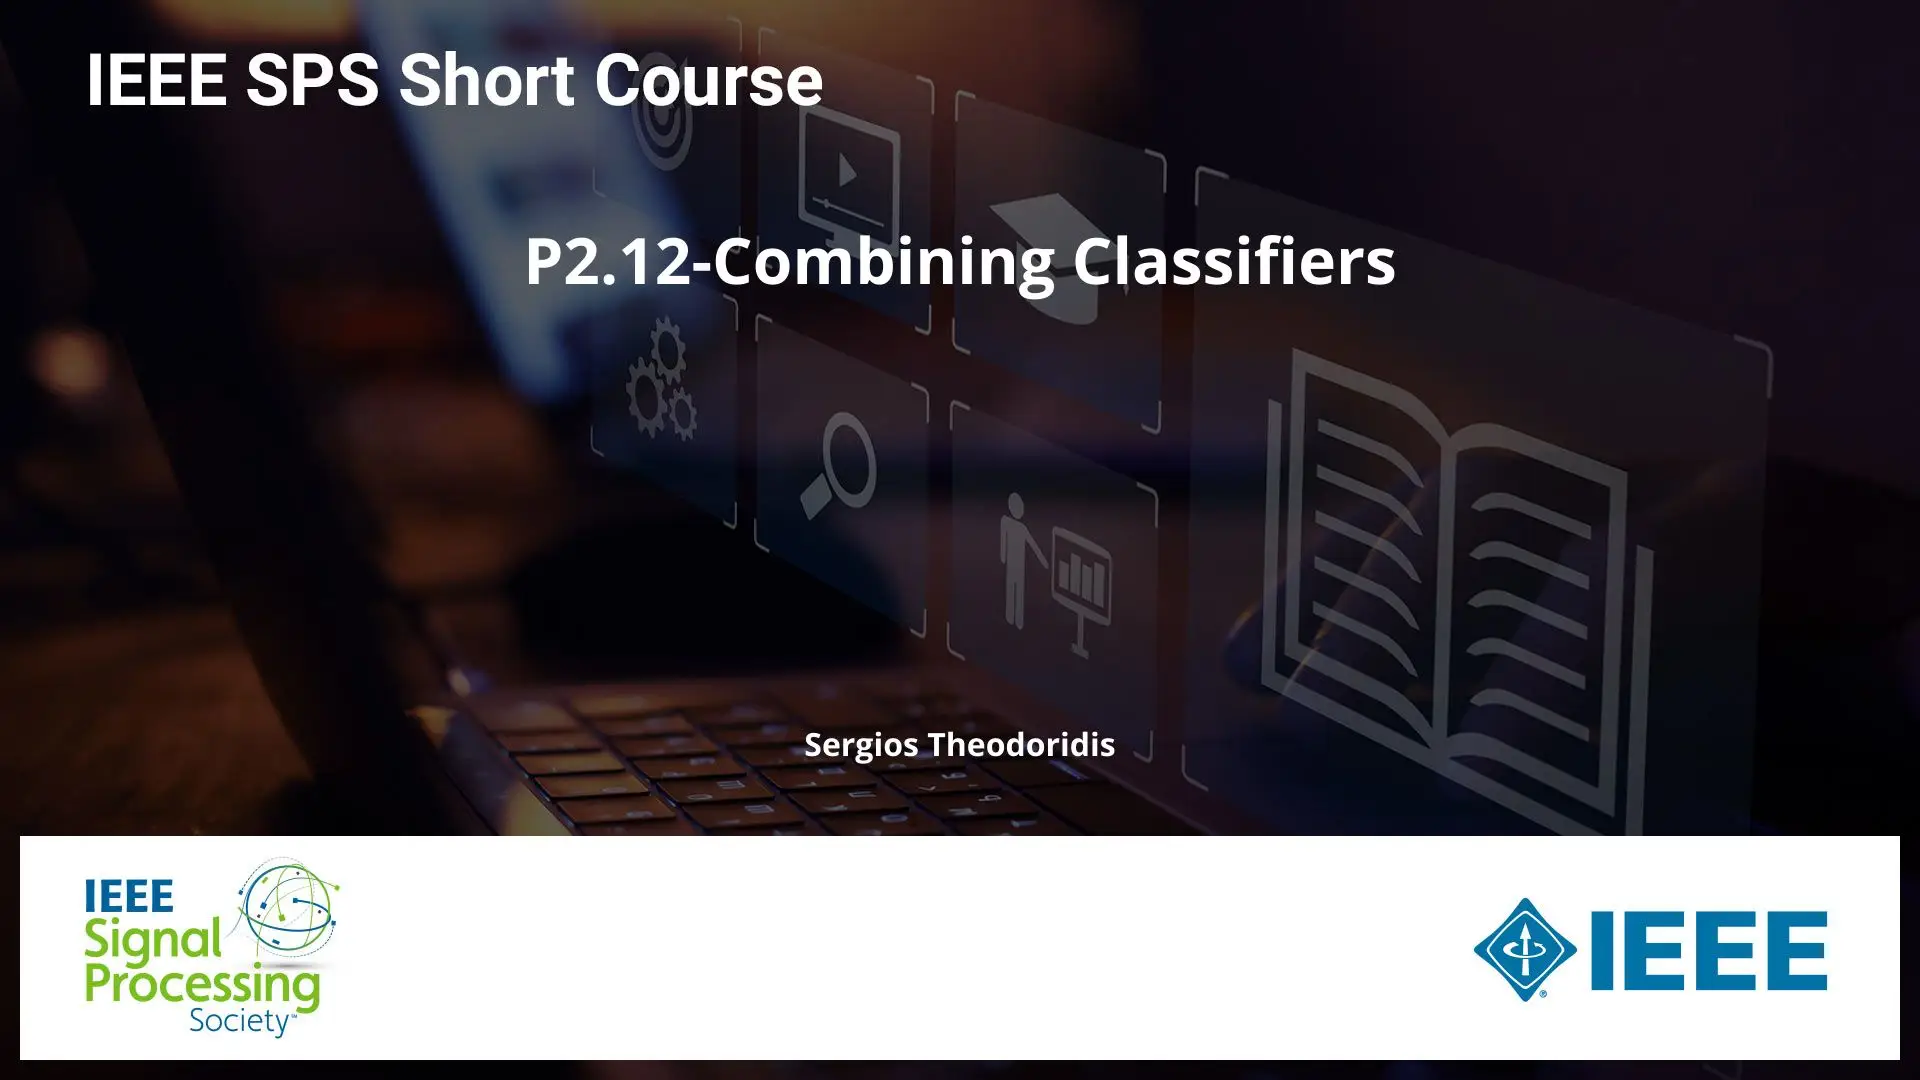 P2.12-Combining Classifiers